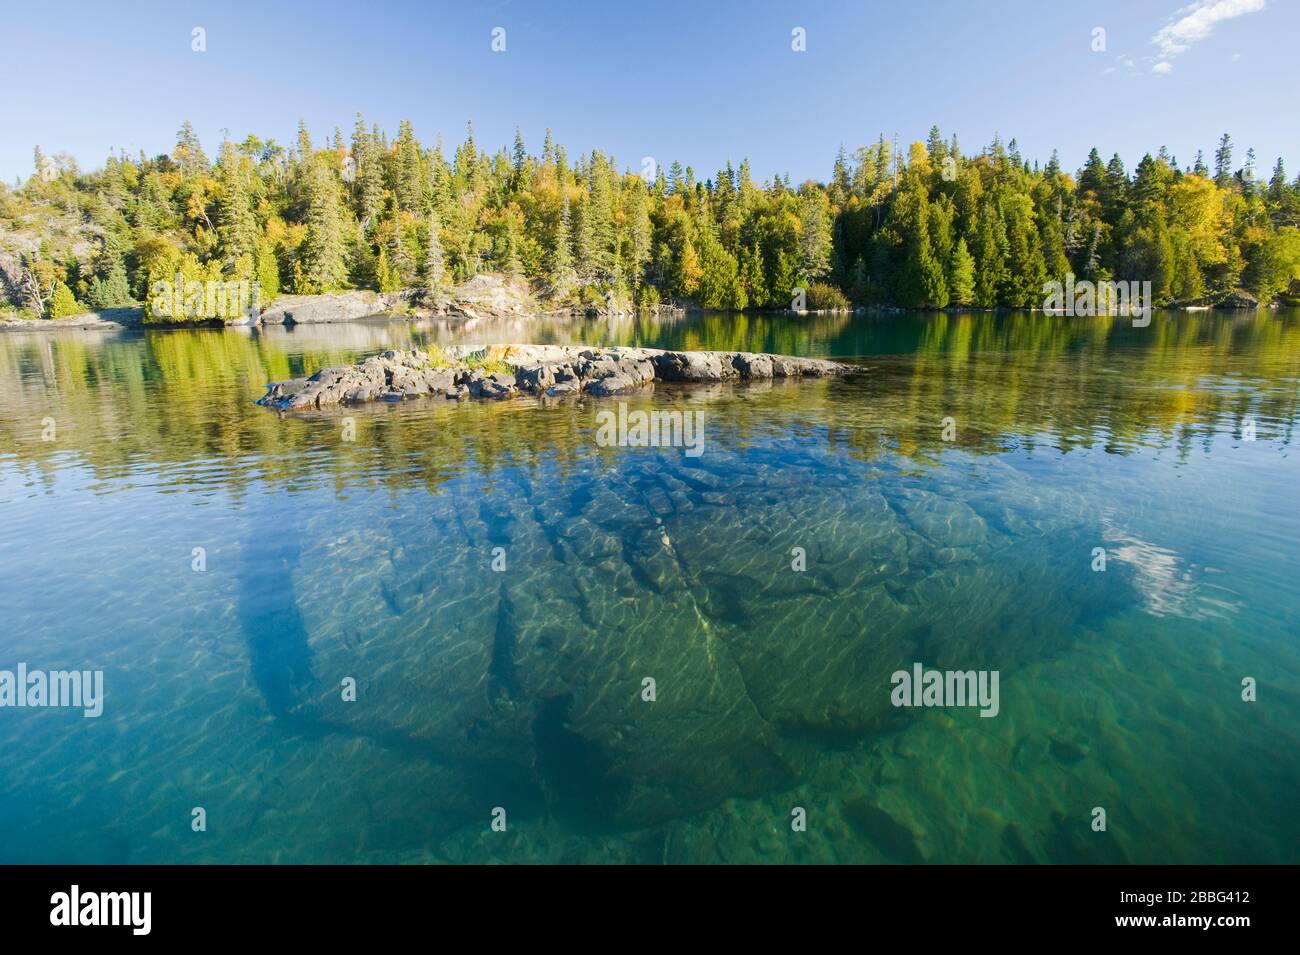 La costa, el Parque Nacional de Pukaskwa, el Lago Superior, Ontario, Canadá Foto de stock